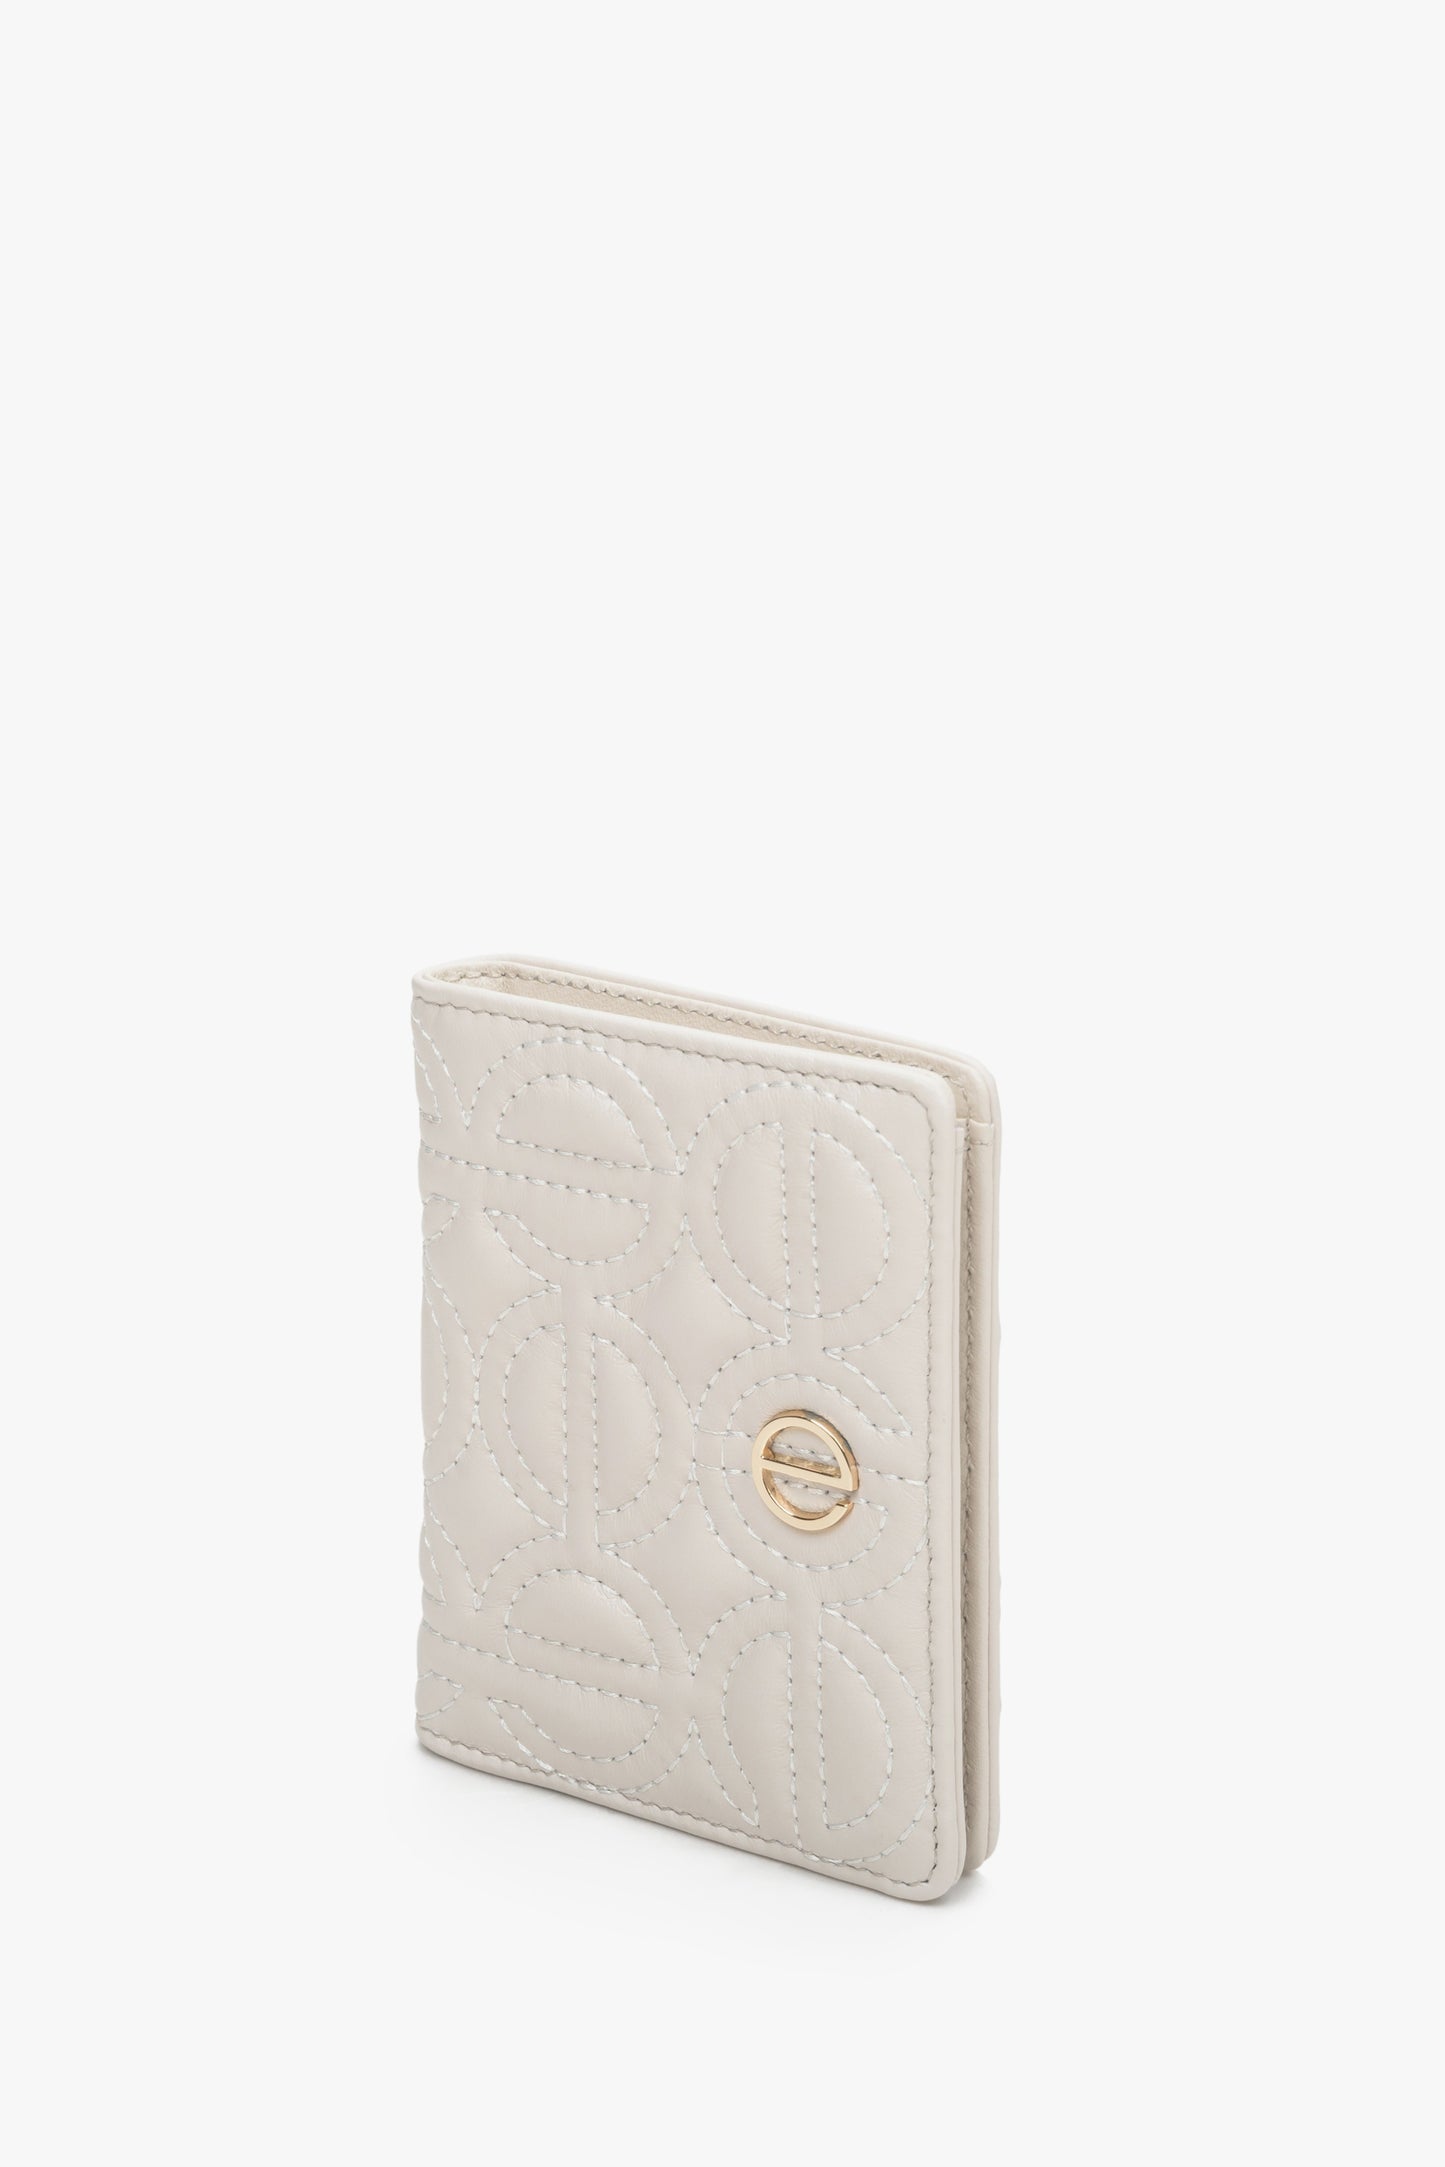 Skórzany, mały portfel damski w kolorze jasnobeżowym ze złotymi okuciami marki Estro.